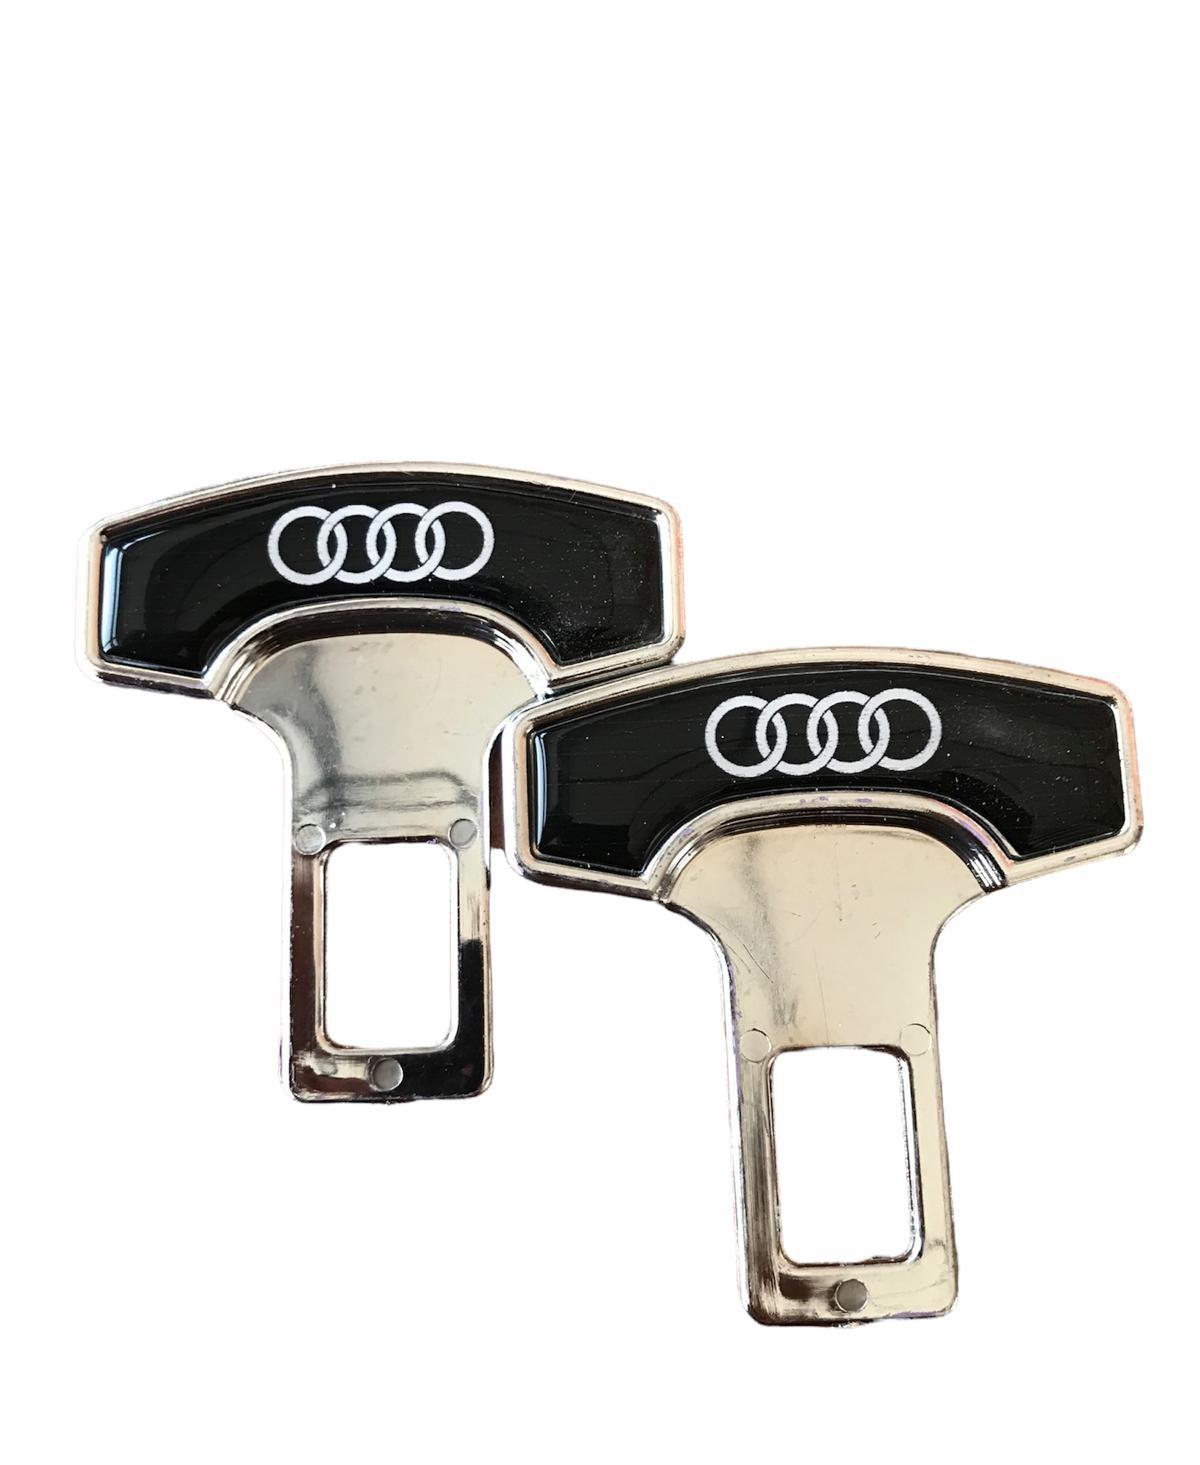 CMSOLAR Oto Kemer Tokası Audi Logolu 2 Adet